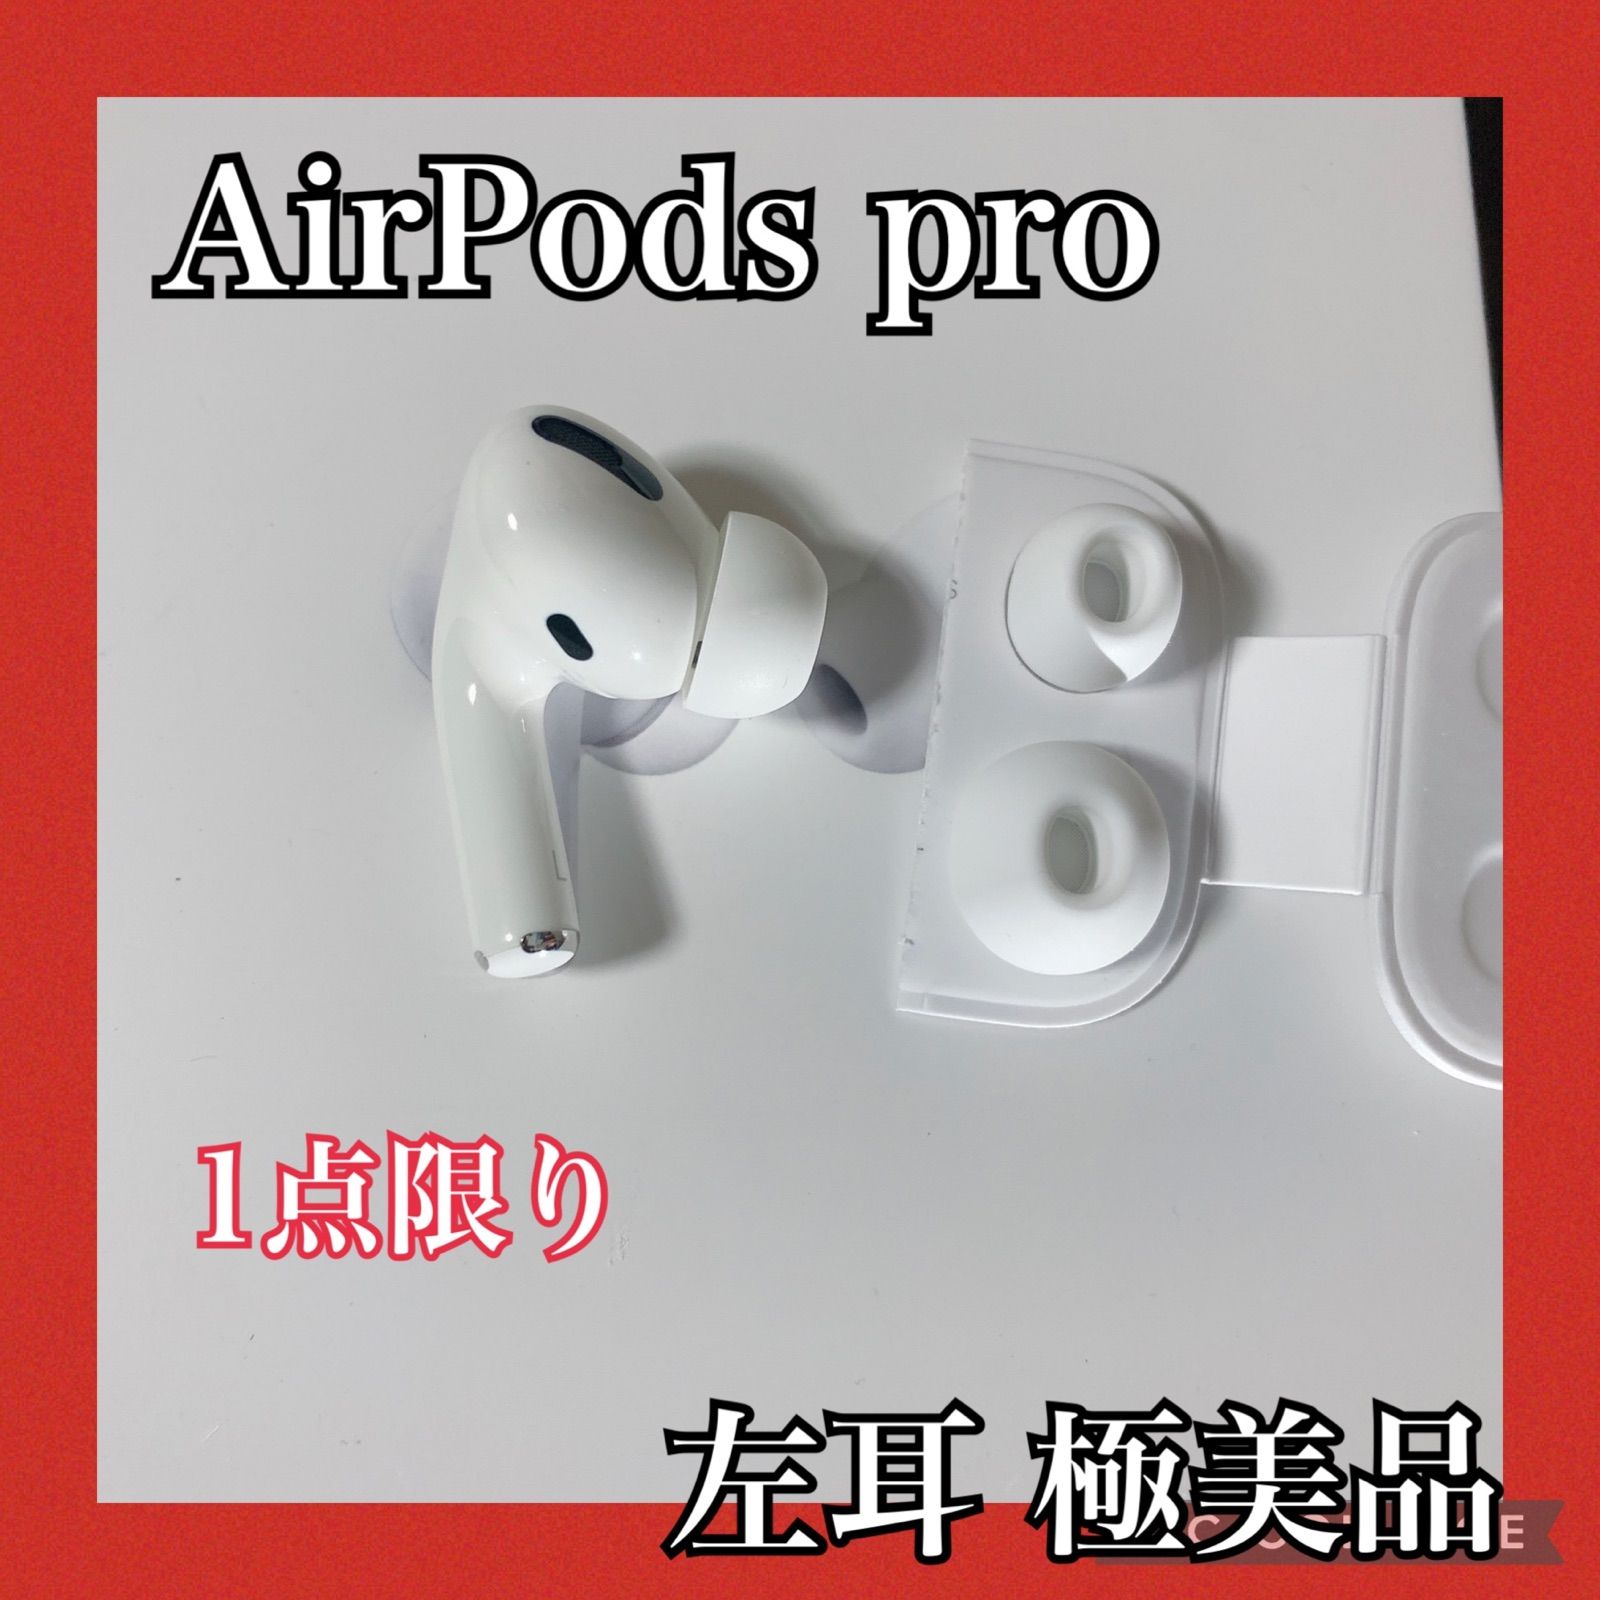 極美品 エアーポッズプロ AirPods Pro 左耳 MWP22J/A 片耳 - メルカリ